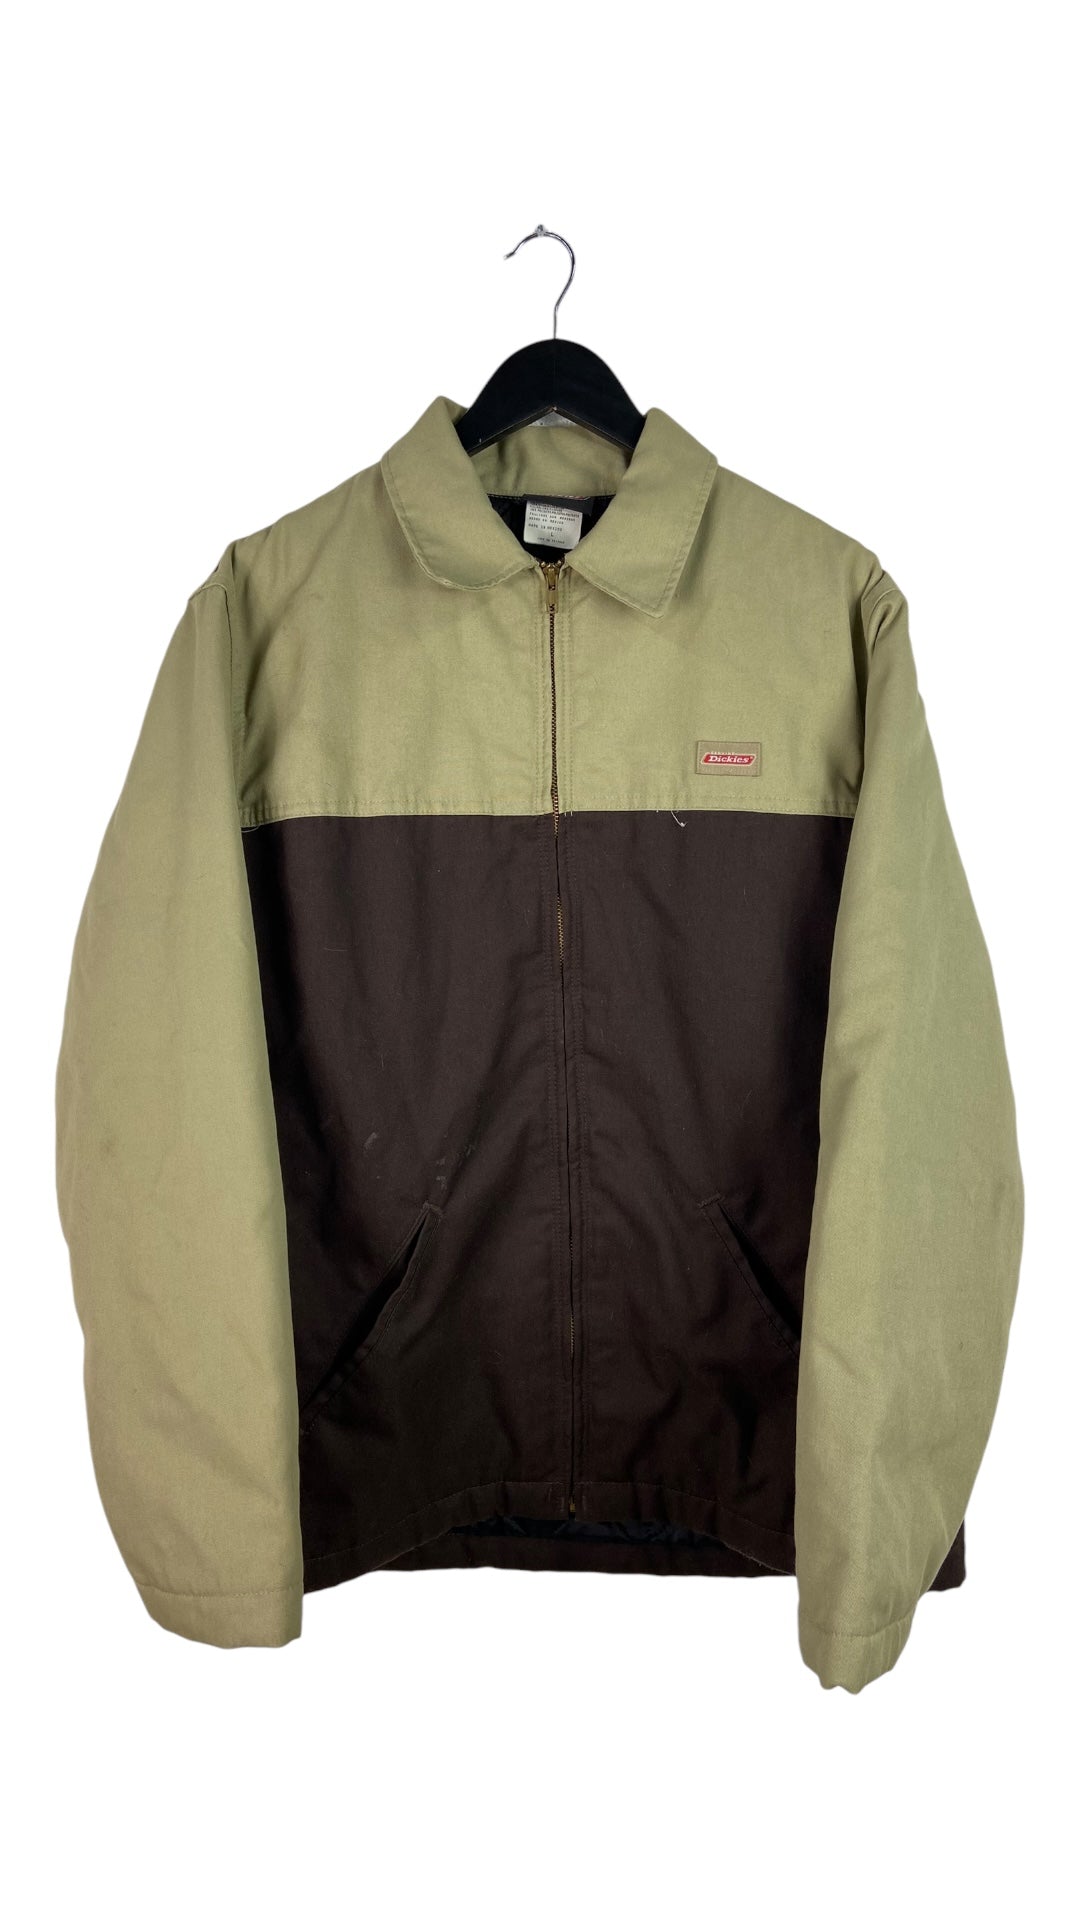 Dickies Tan/Brown Workwear Zip Up Jacket Sz L